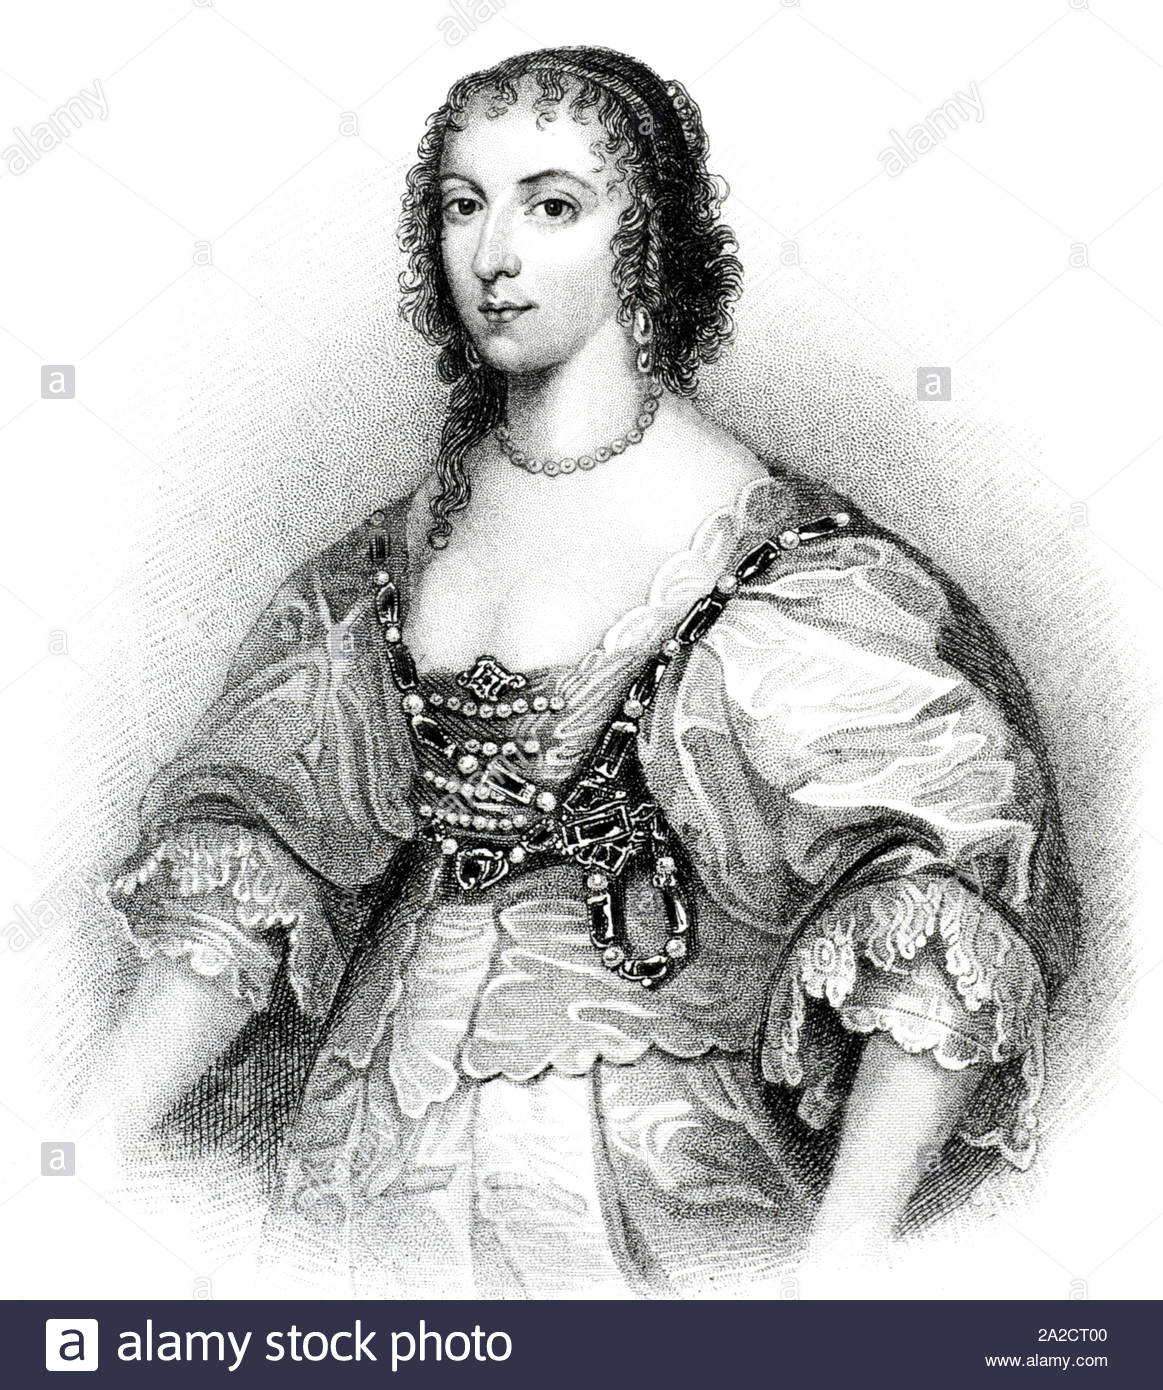 Henrietta Maria Henriette Marie de France, 1609 - 1669, est reine consort d'Angleterre, d'Écosse et d'Irlande en tant qu'épouse du roi Charles I, illustration de 1850 vintage Banque D'Images